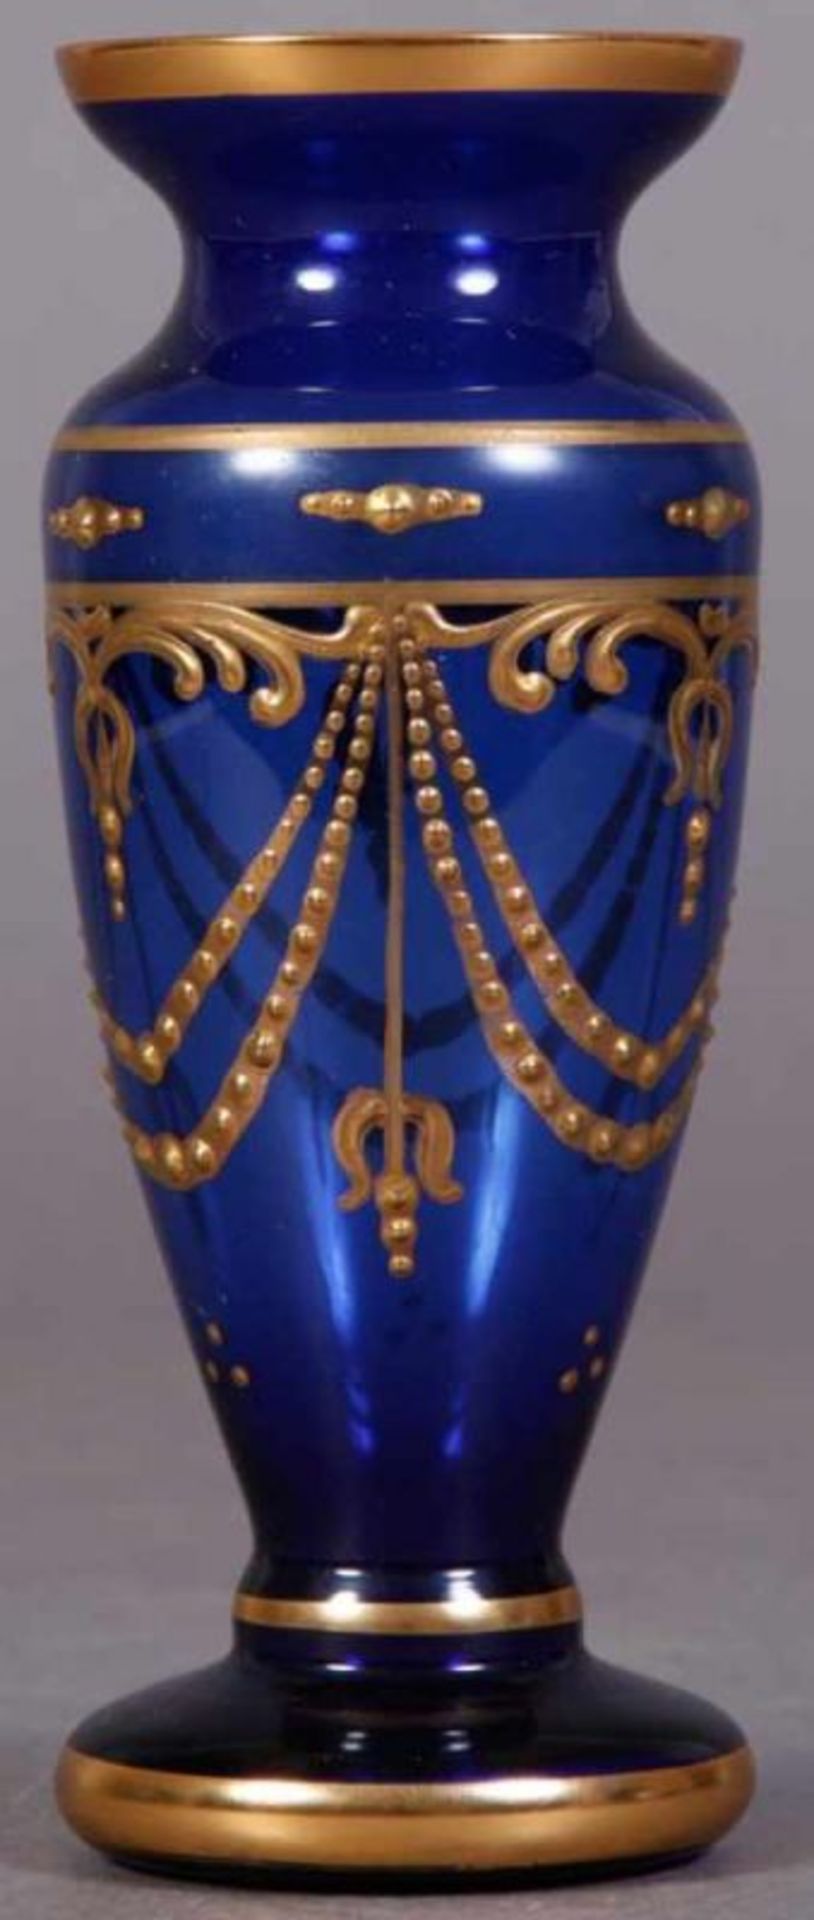 Blaue Tischvase/Glasvase mit reichem Golddekor, um 1900. Höhe 16,5 cm.